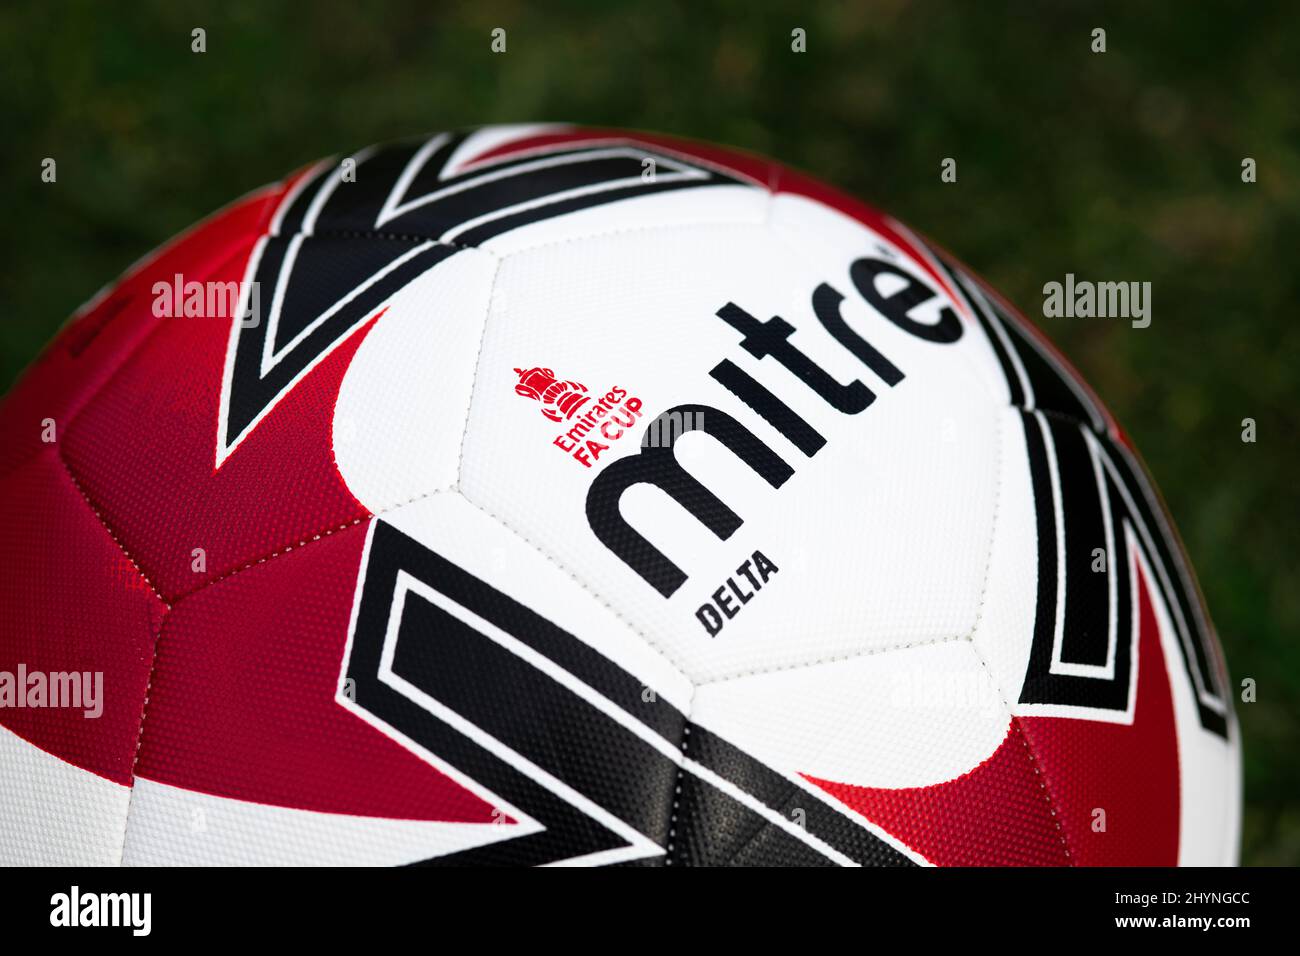 Delta max. De l'onglet Football officiel de la coupe Emirates FA. Banque D'Images